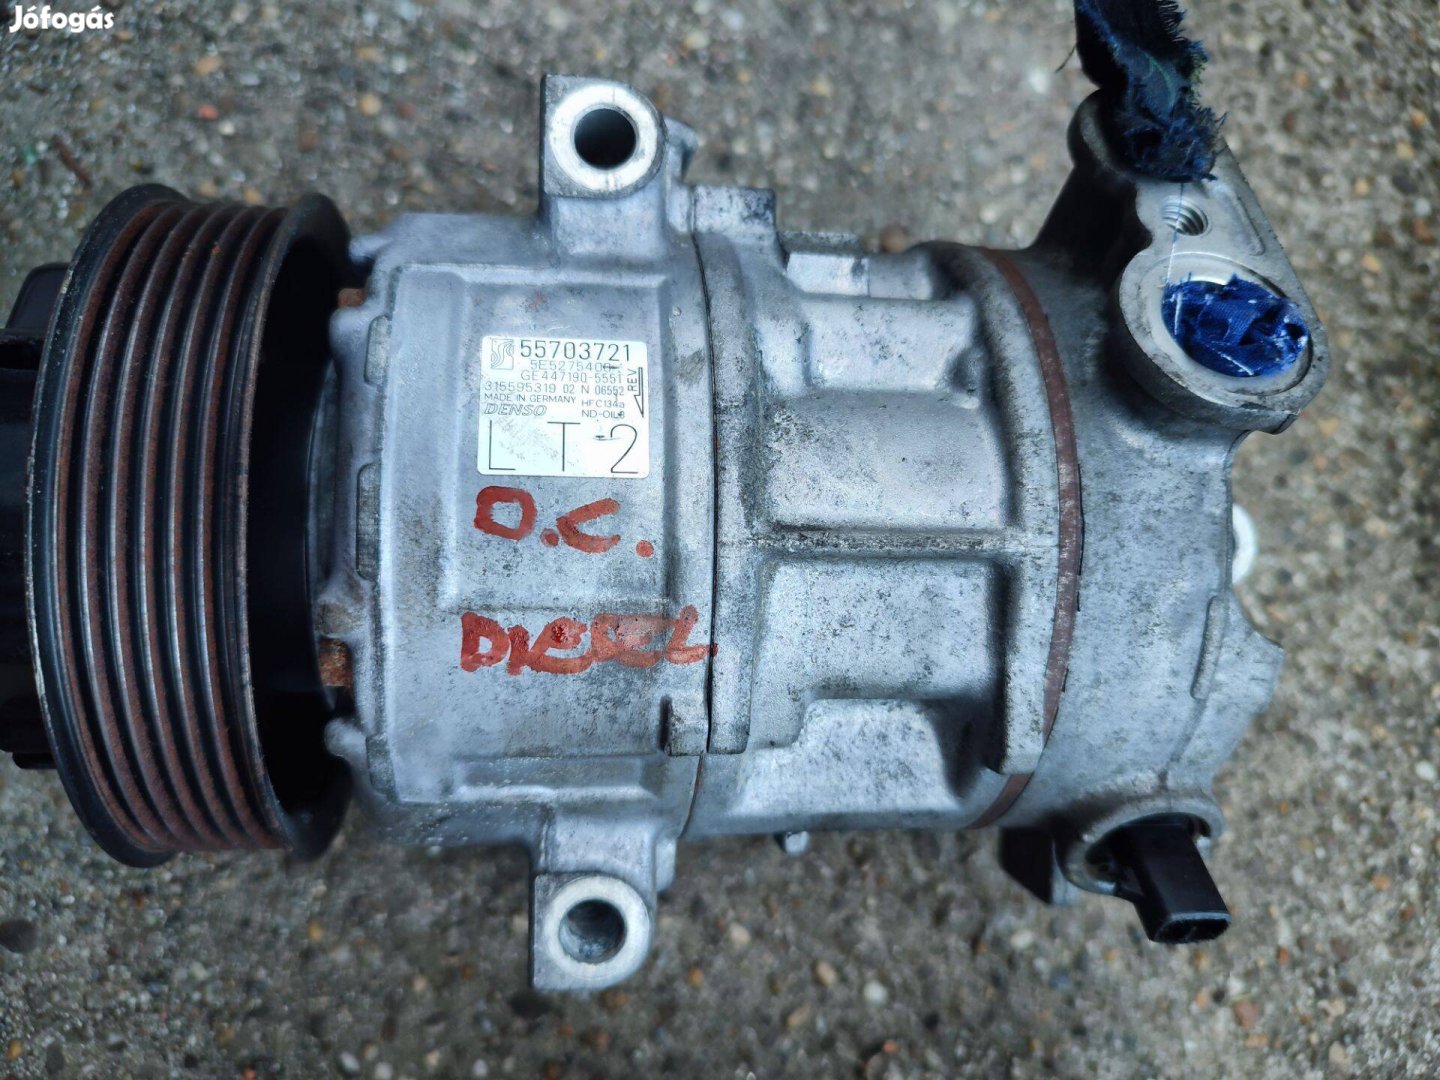 D Corsa diesel klíma kompresszor